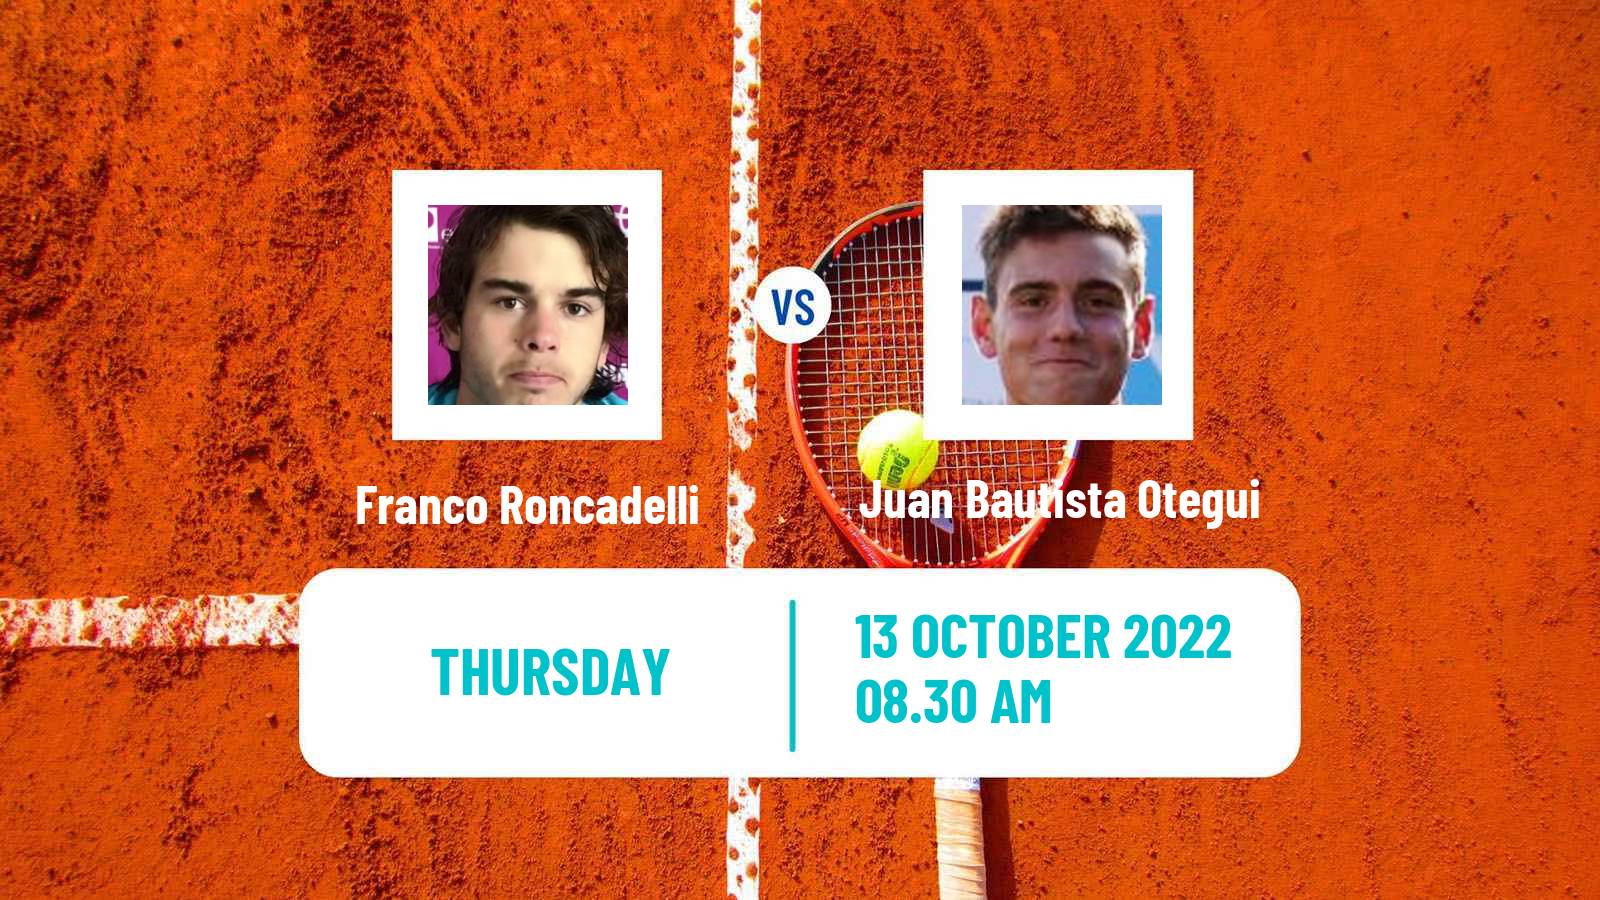 Tennis ITF Tournaments Franco Roncadelli - Juan Bautista Otegui